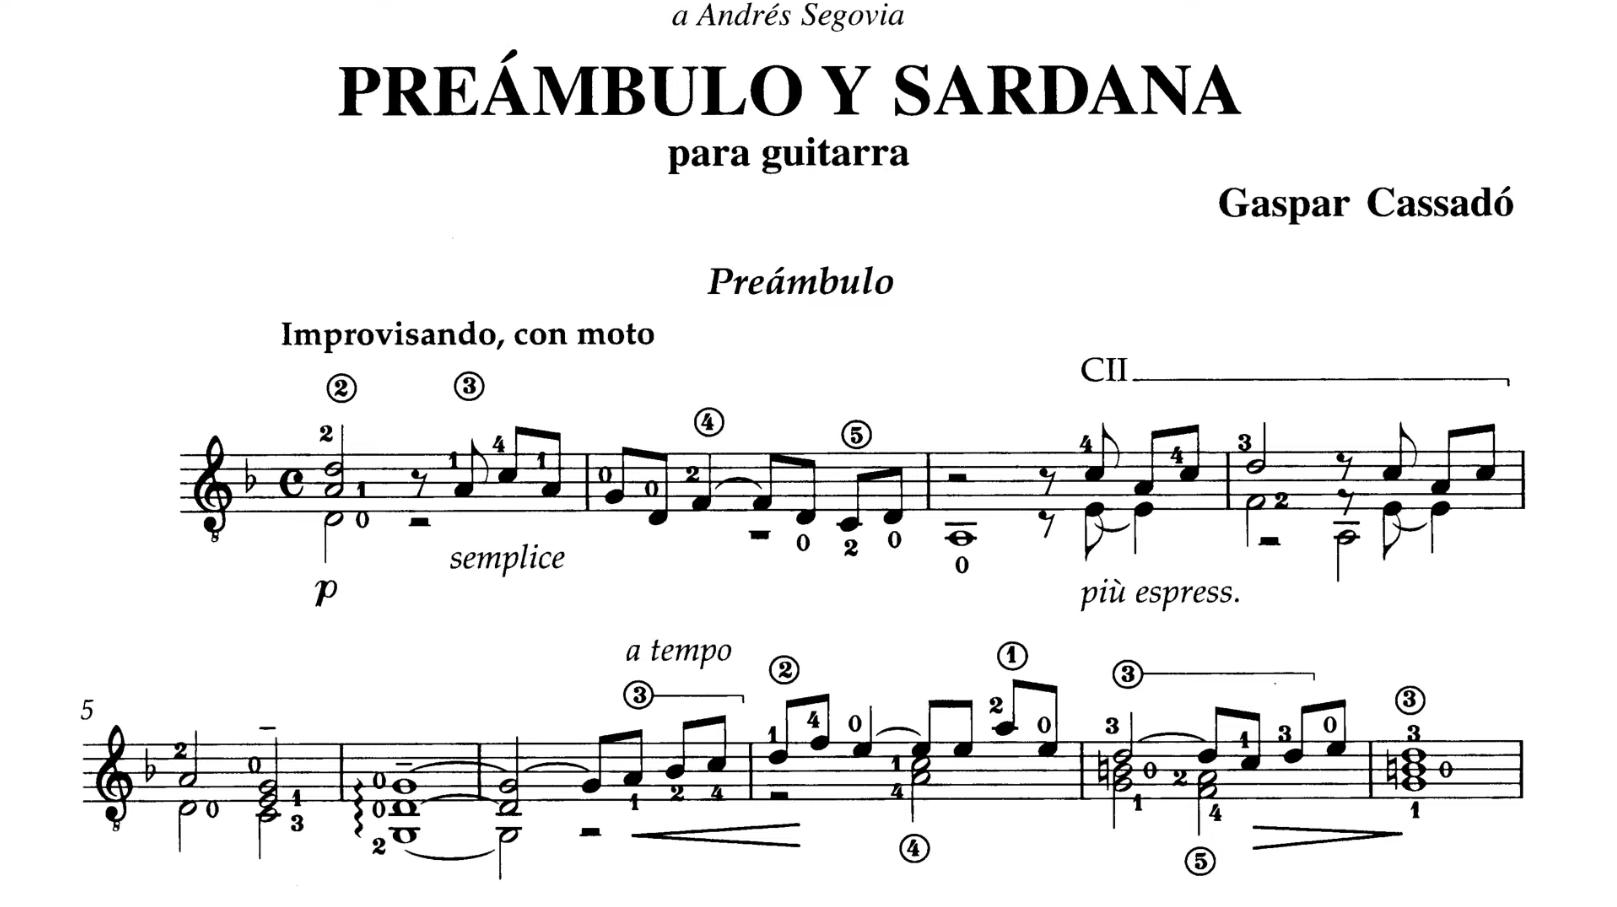 古典吉他视频谱 | 加斯帕尔·卡萨拉多 Preámbulo y Sardana-古桐博客